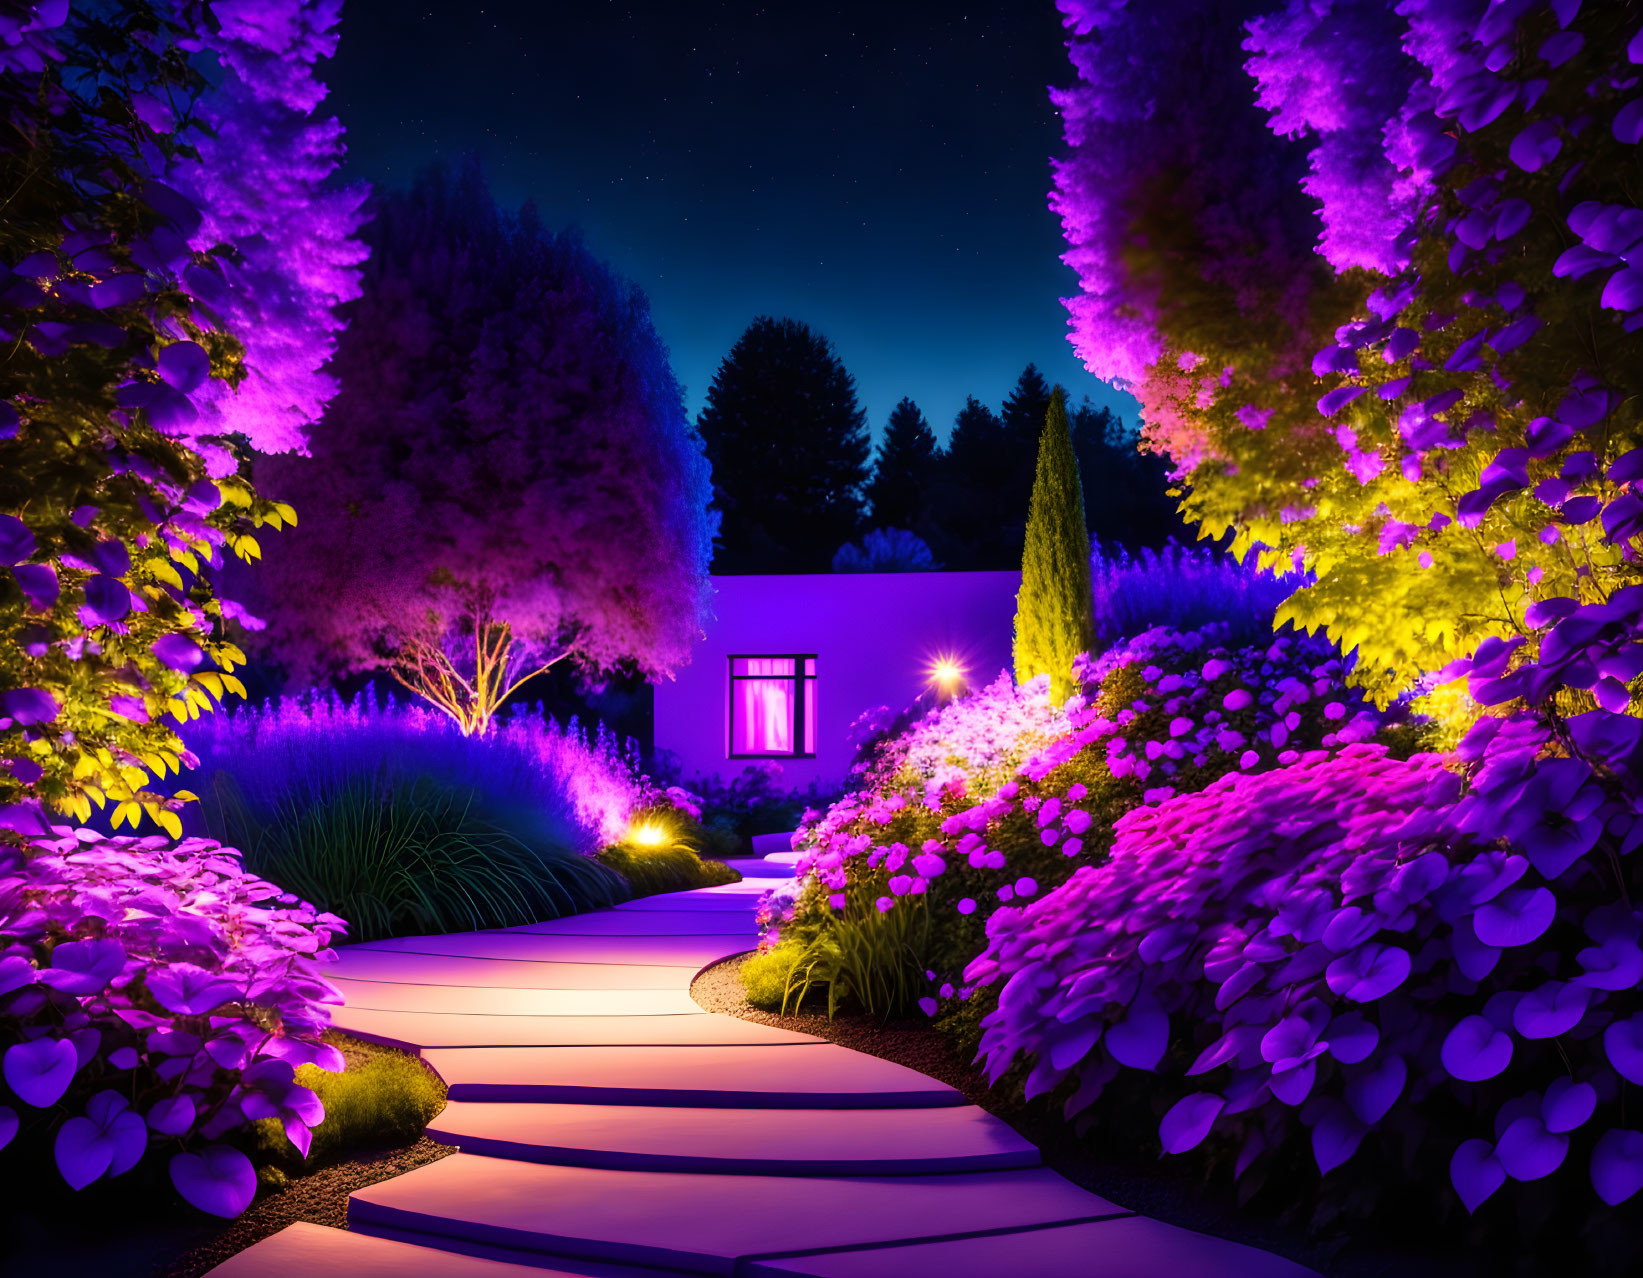 Bright purple garden